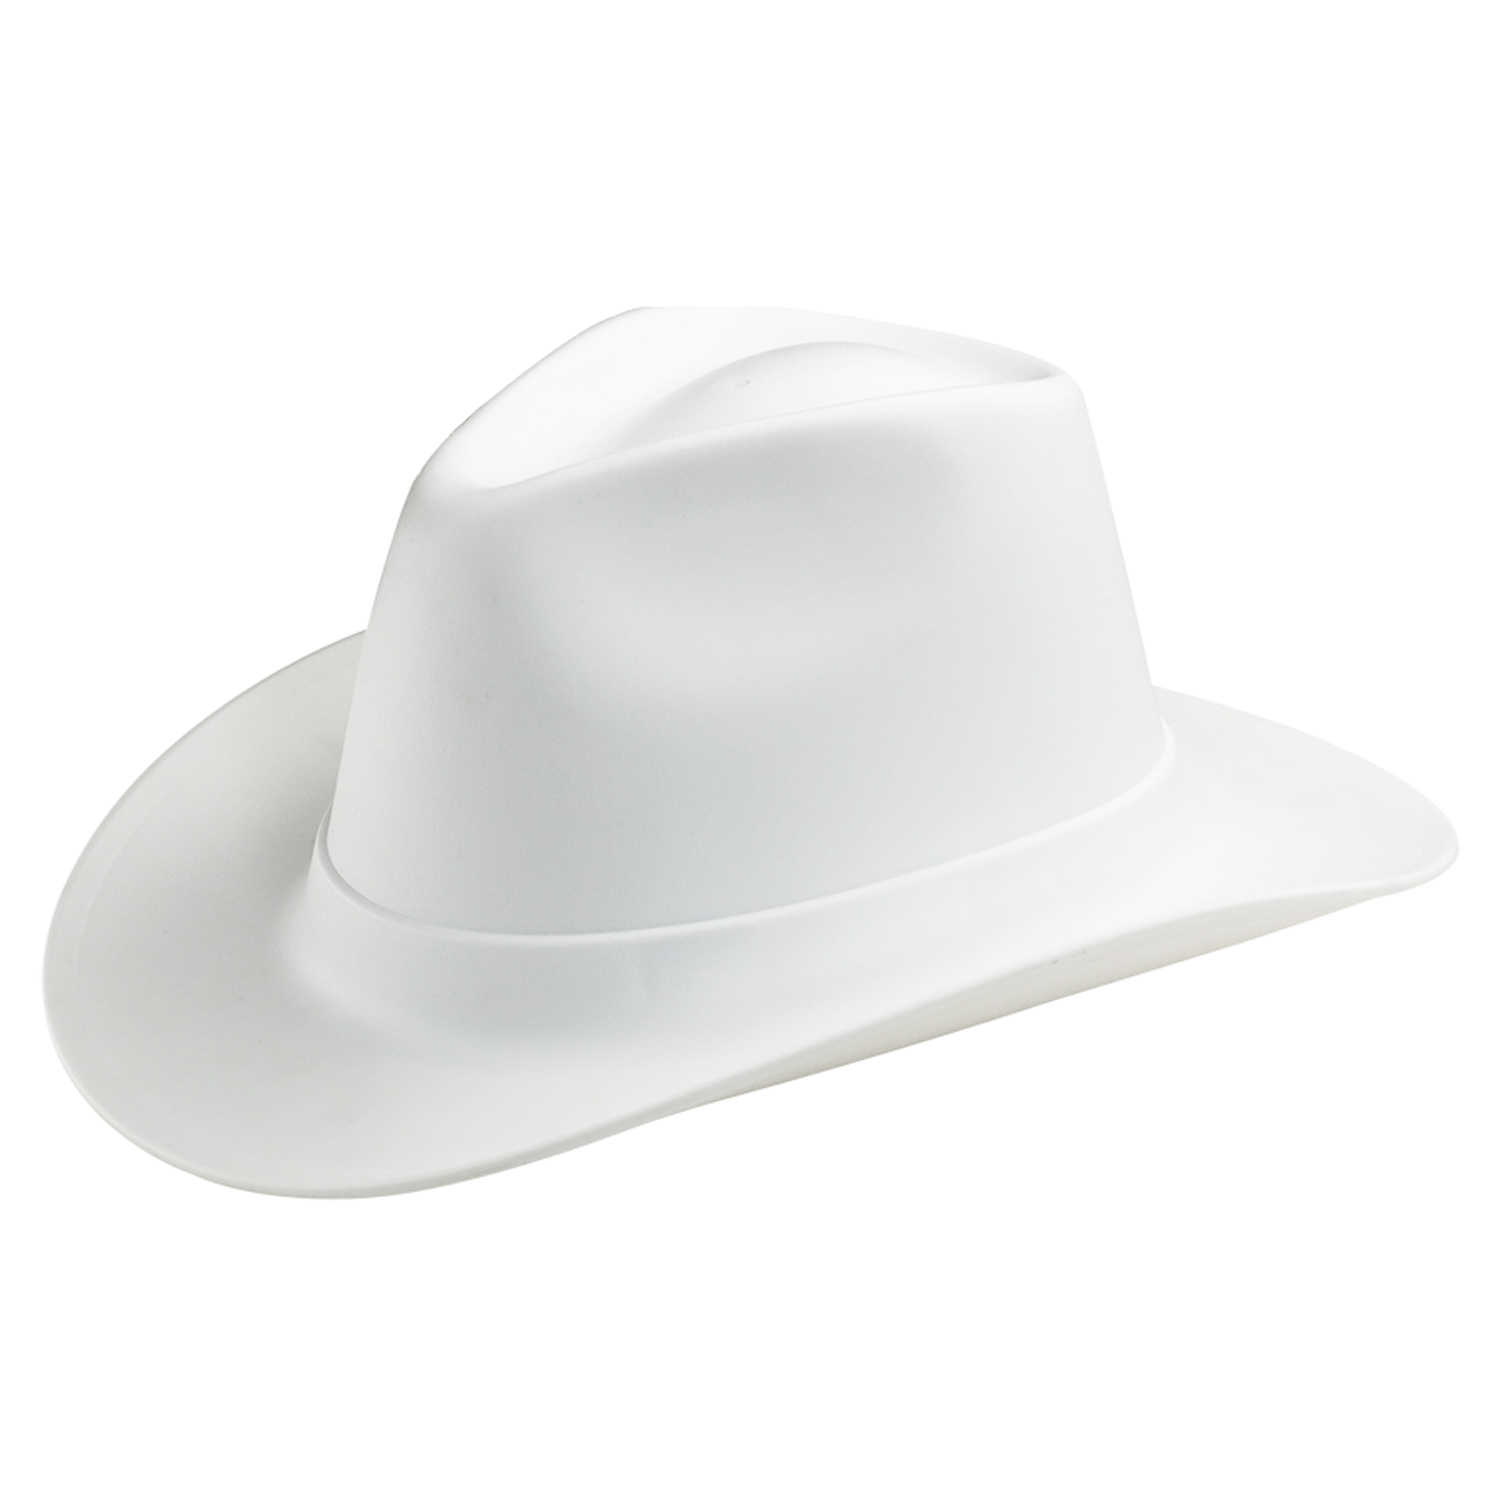 Каска в форме шляпы. Vulcan Cowboy Style hard hat White. Vulcan vcb200-00 Western hard hat, Type 1, class e, Ratchet (6-point), белый. Каска защитная ковбойская шляпа. Vulka vcb100-00 hard hat строительная.